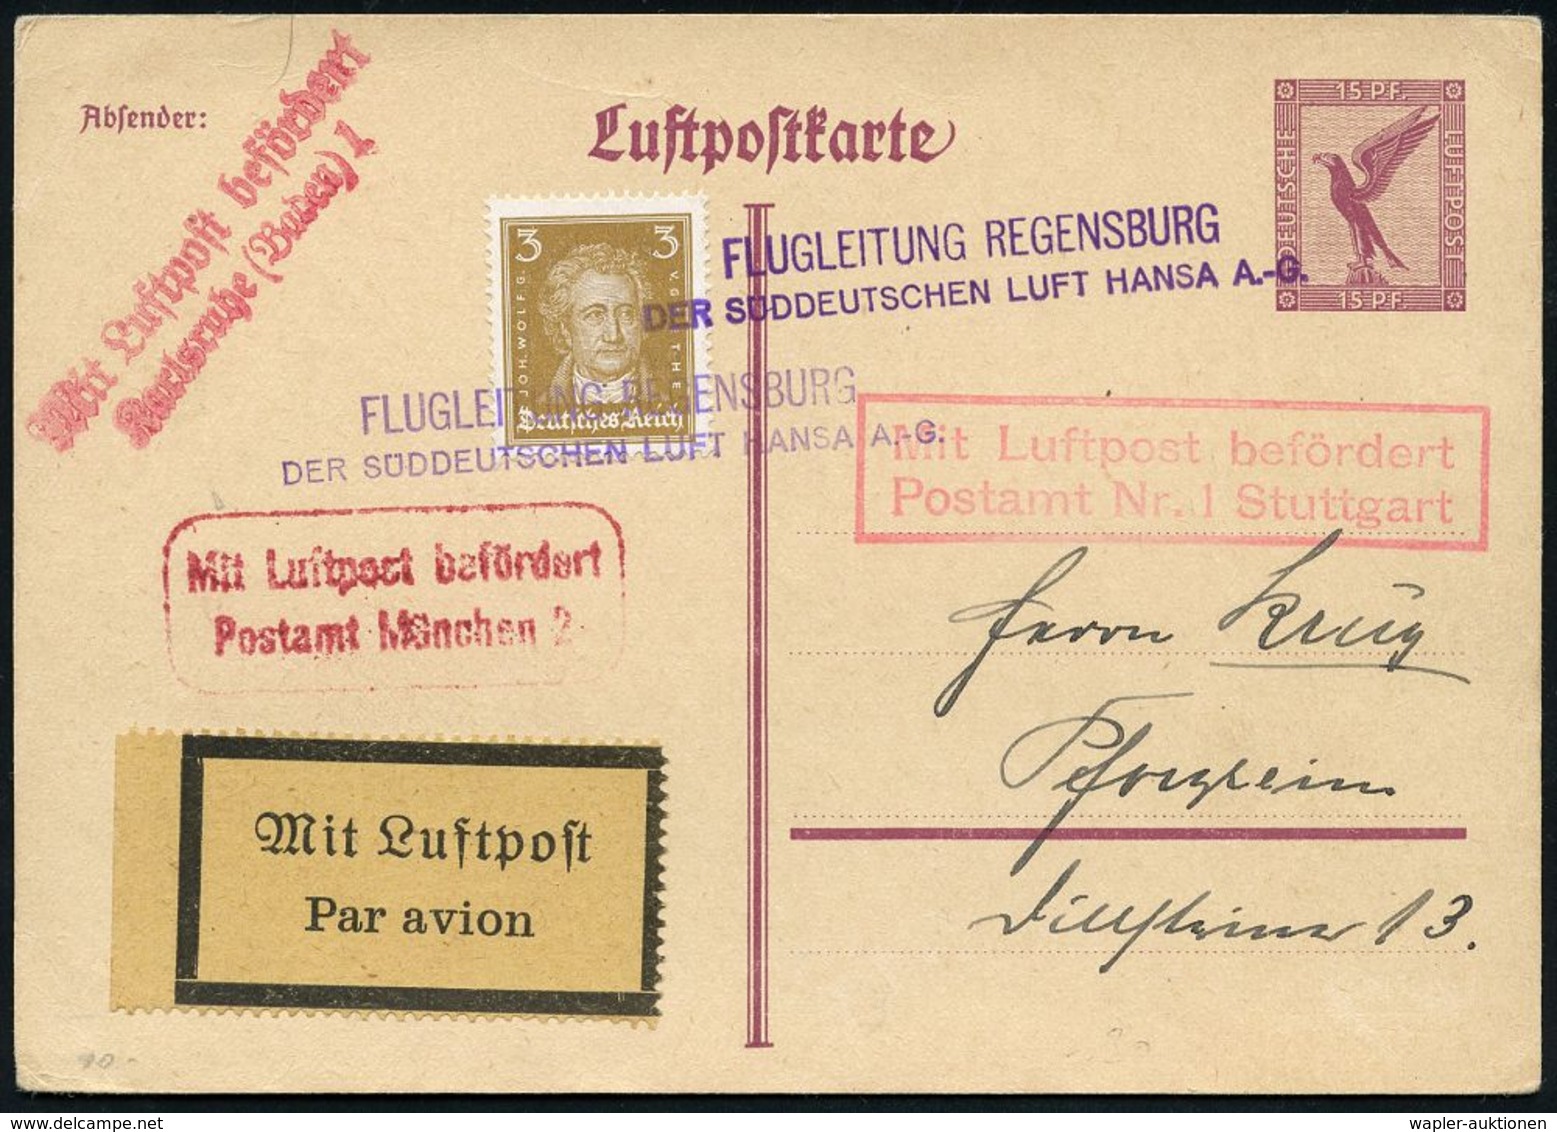 FLUGHAFEN / FLUGHAFEN-POSTÄMTER : Regensburg 1926 (ca.) Viol. 2L: FLUGLEITUNG REGENSBURG/ DER SÜDDEUTSCHEN LUFT HANSA A. - Altri (Aria)